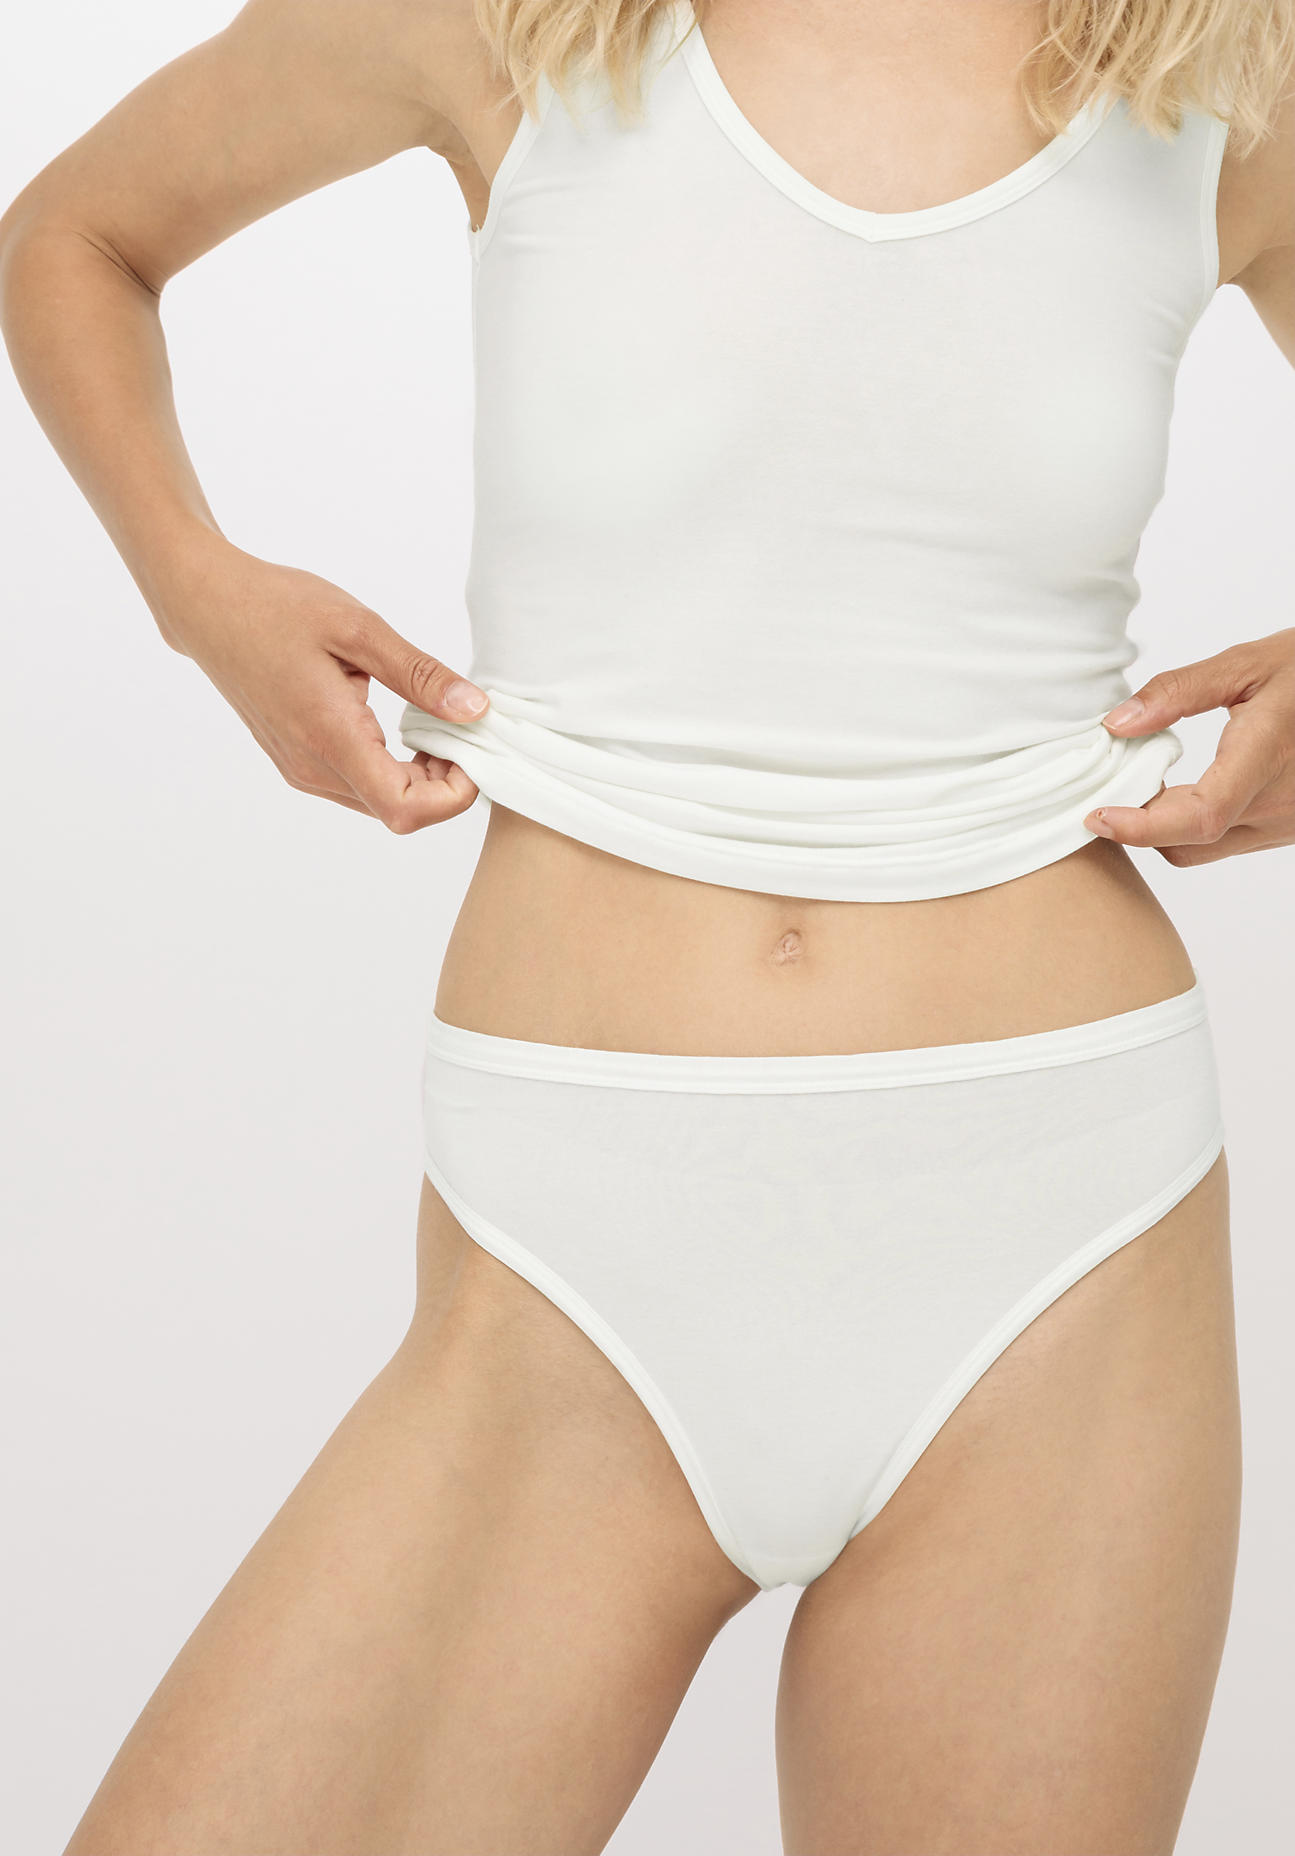 hessnatur Damen Slip high waist aus Bio-Baumwolle und Tencel™ Modal - weiß - Größe 36